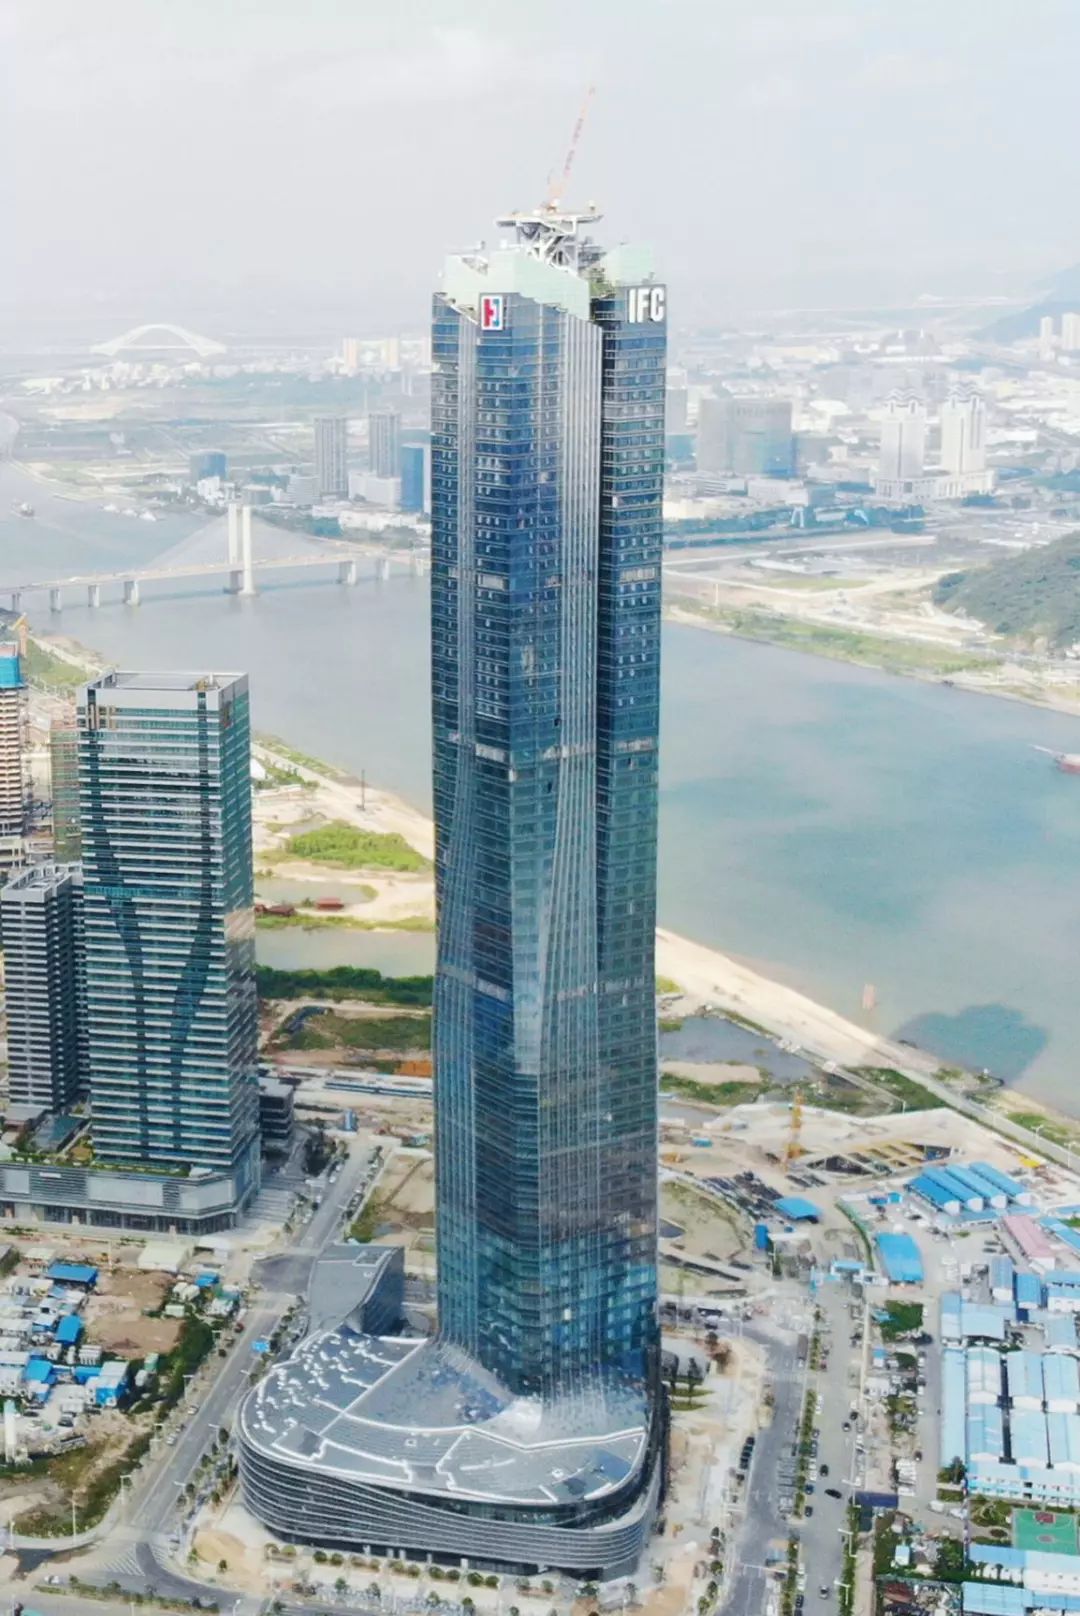 新高度丨三鑫科技承建珠海第一高楼横琴ifc塔楼幕墙正式封顶